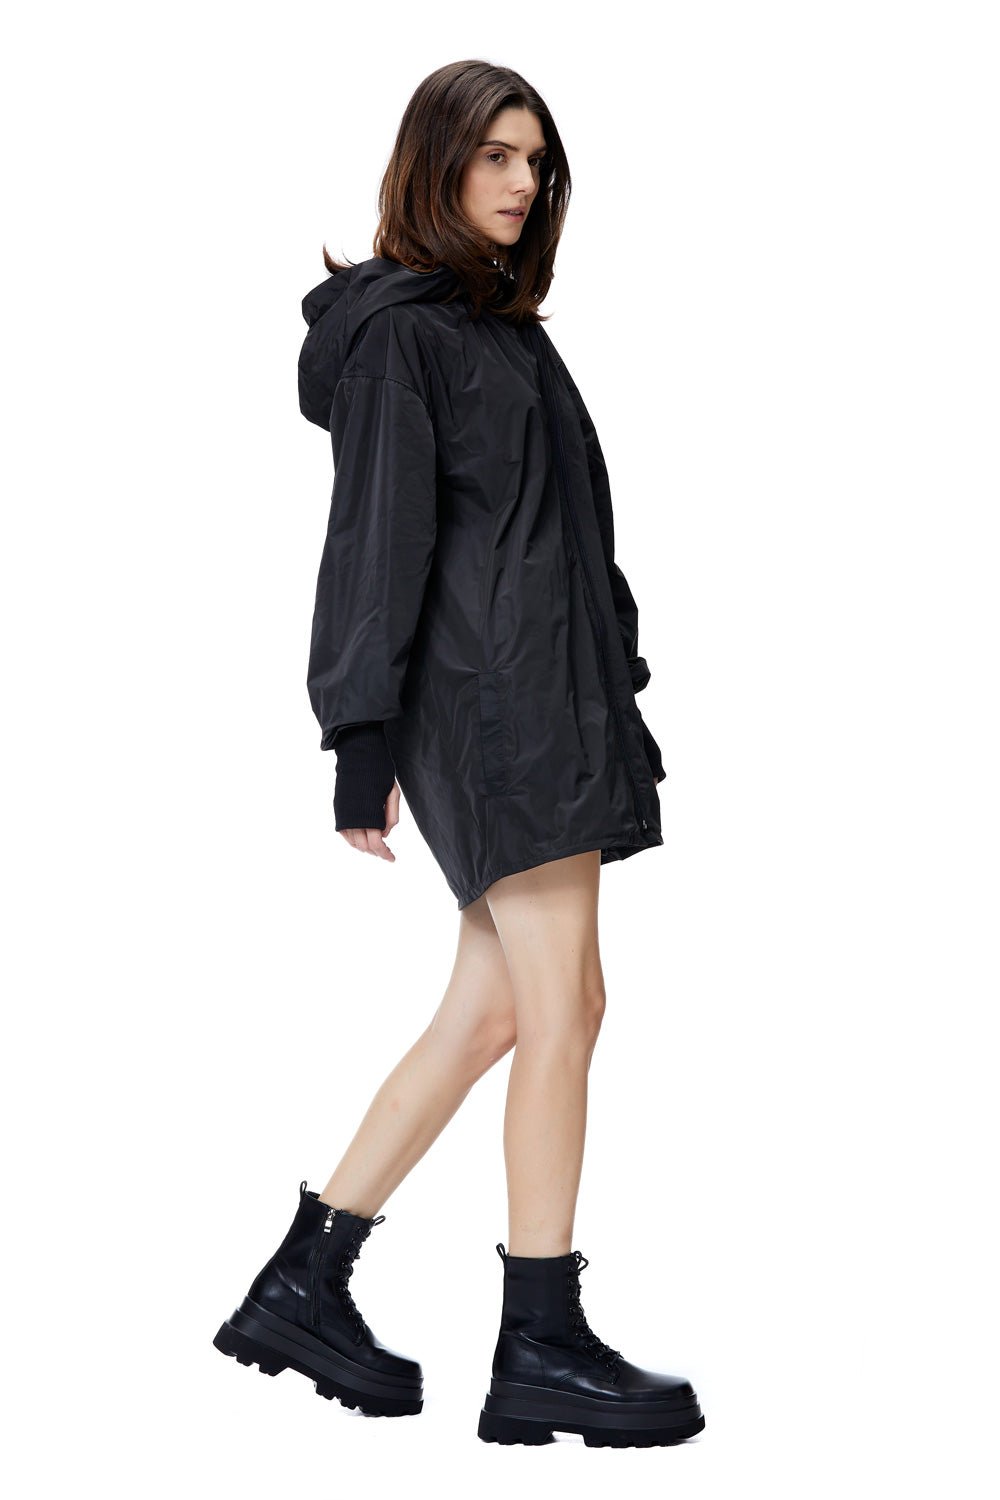 Hanorac damă, negru, rezistent la ploaie, tehnologie impermeabilă, detalii elegante